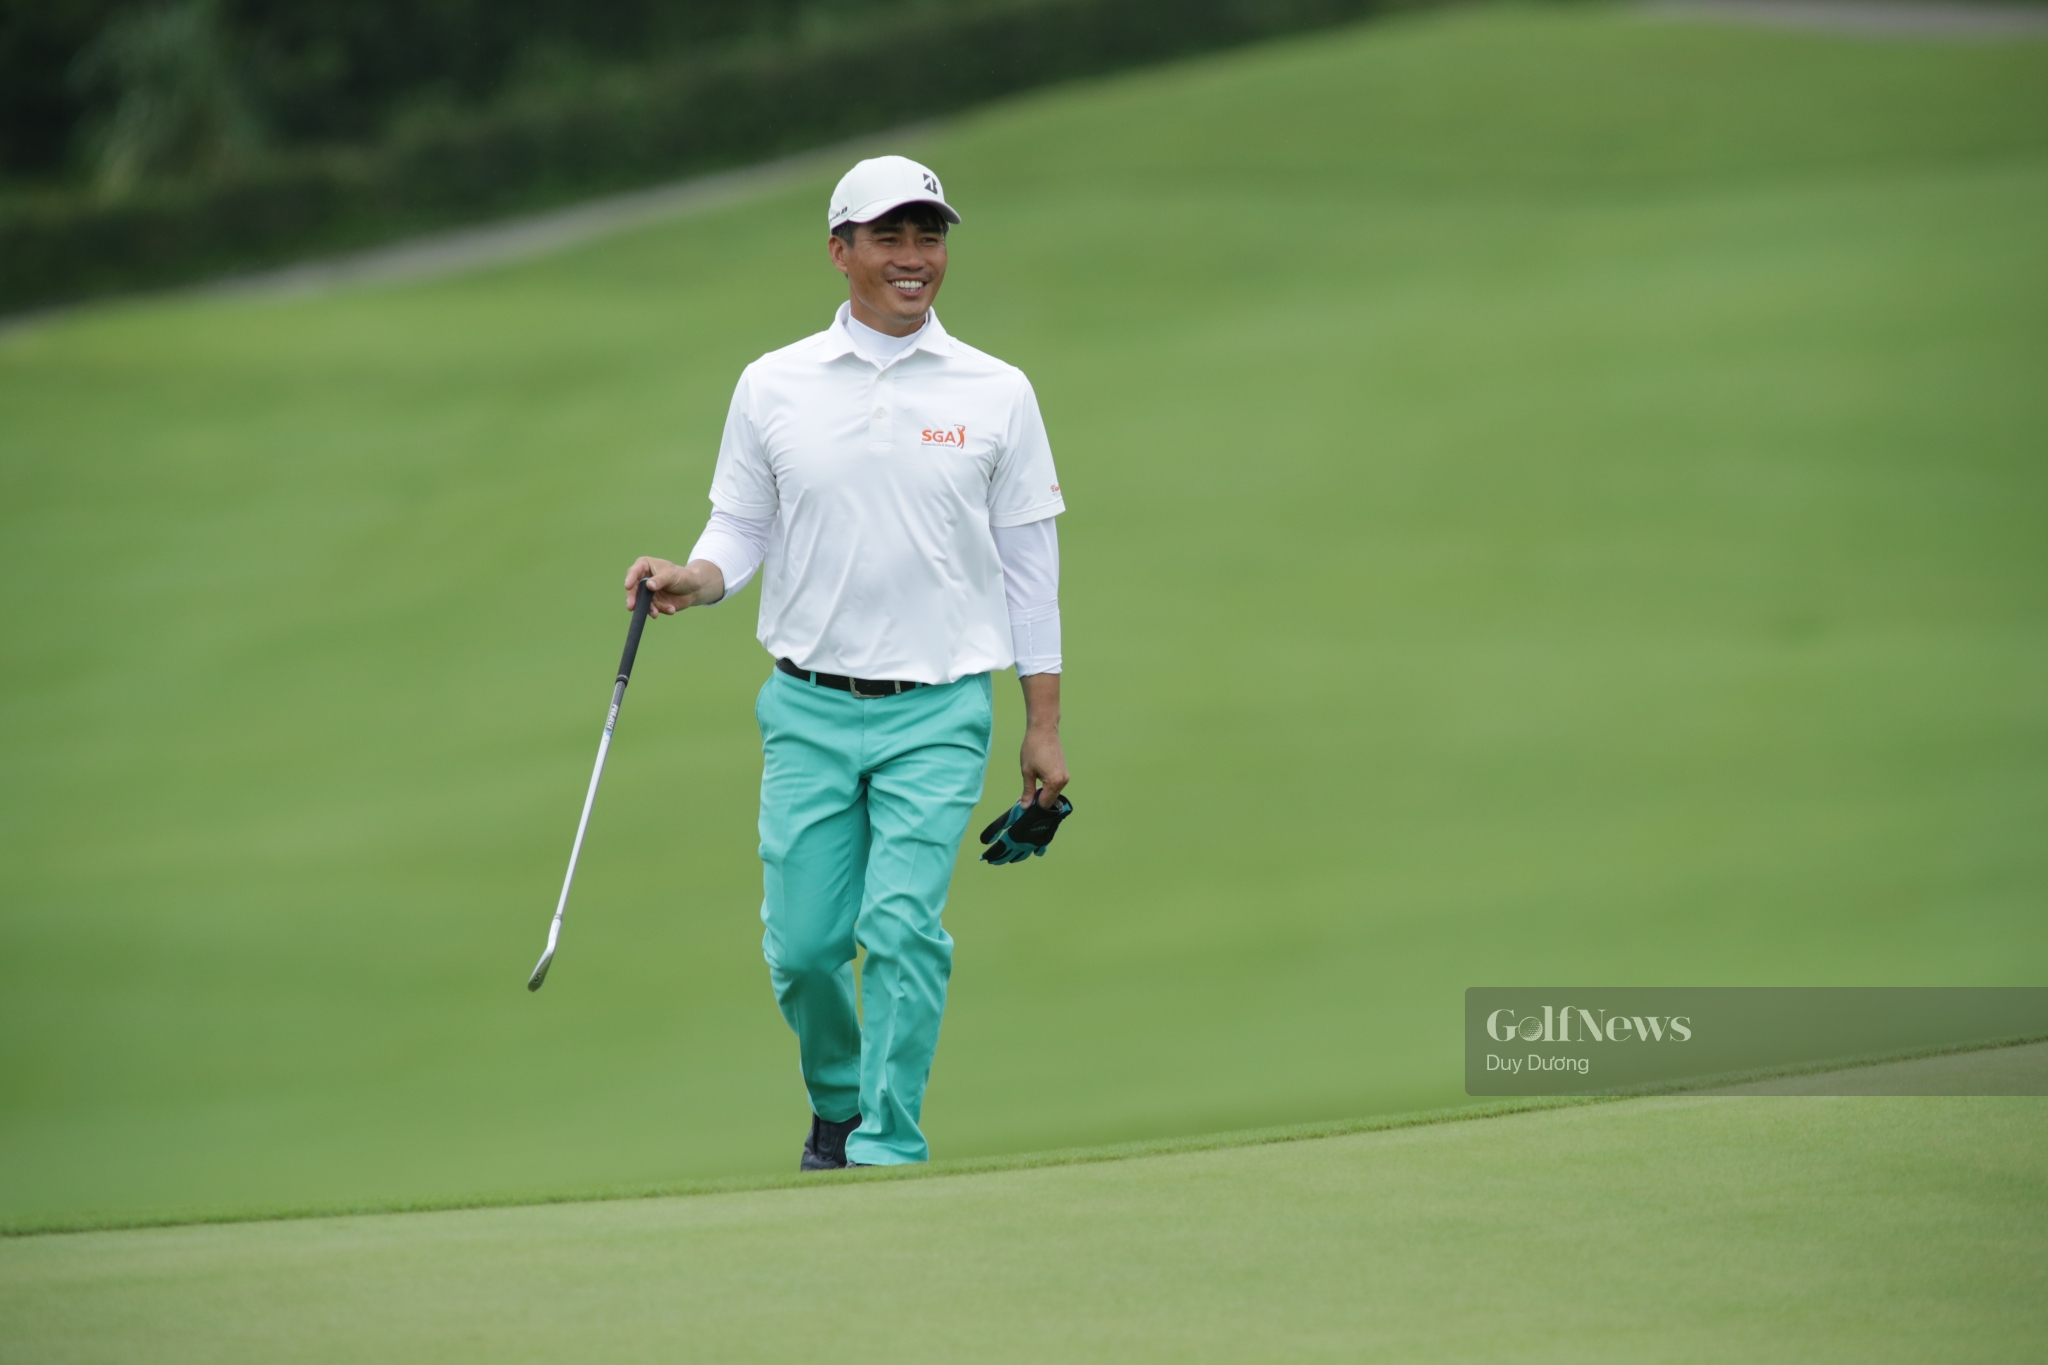 Golfer Doãn Văn Định: Danh hiệu Quốc gia 2012 mang nhiều ý nghĩa lớn